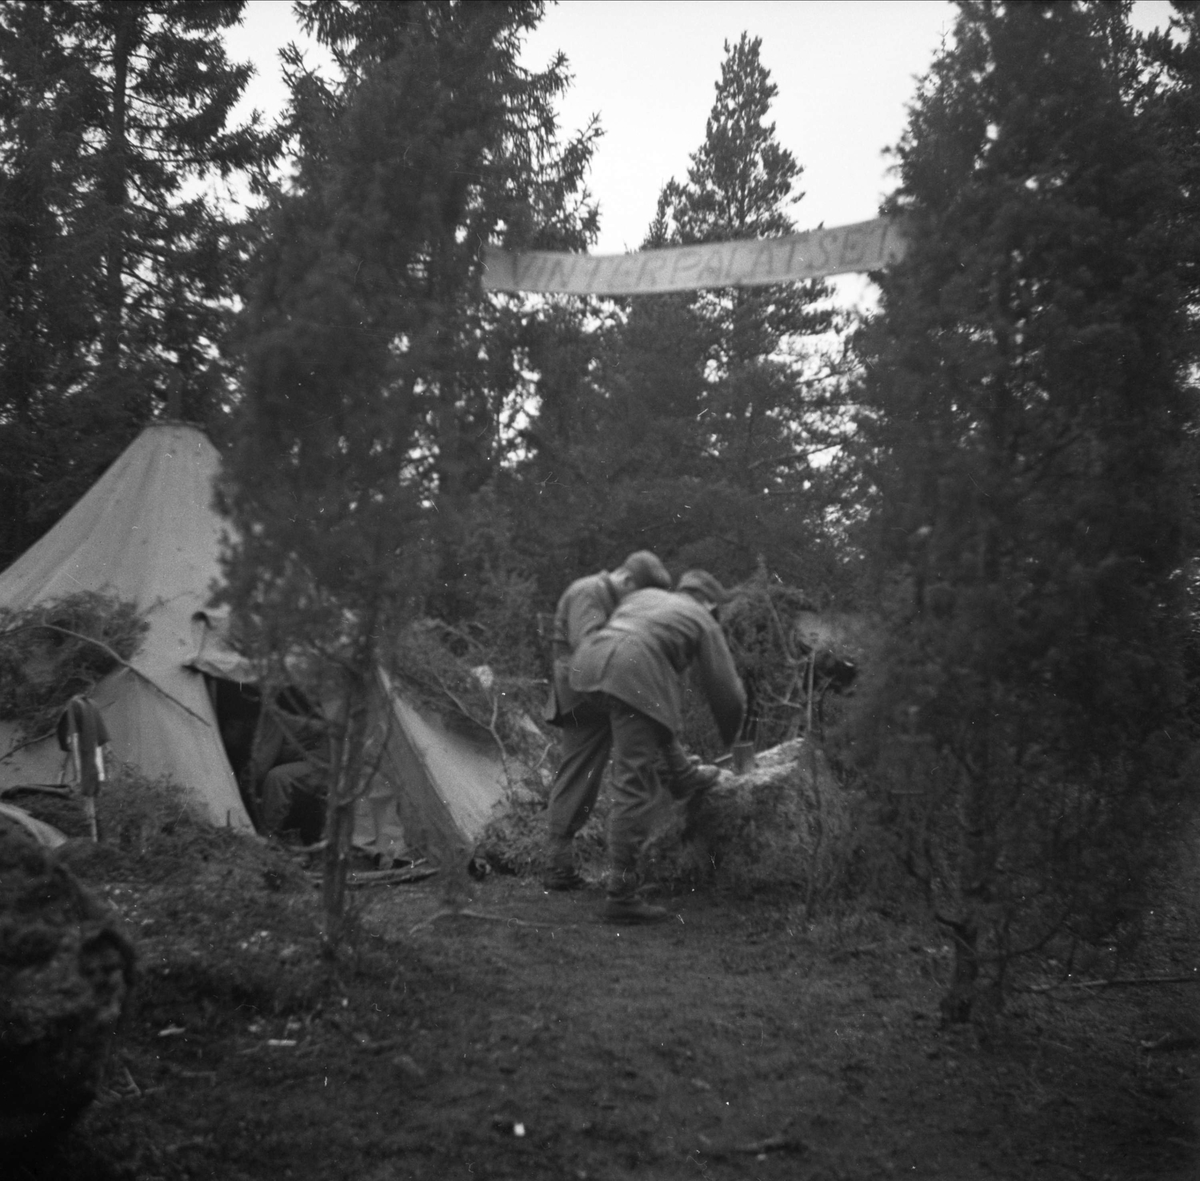 Skoputsning på militärmanöver, sannolikt i Järva, Solna socken, Uppland sent 1940-tal